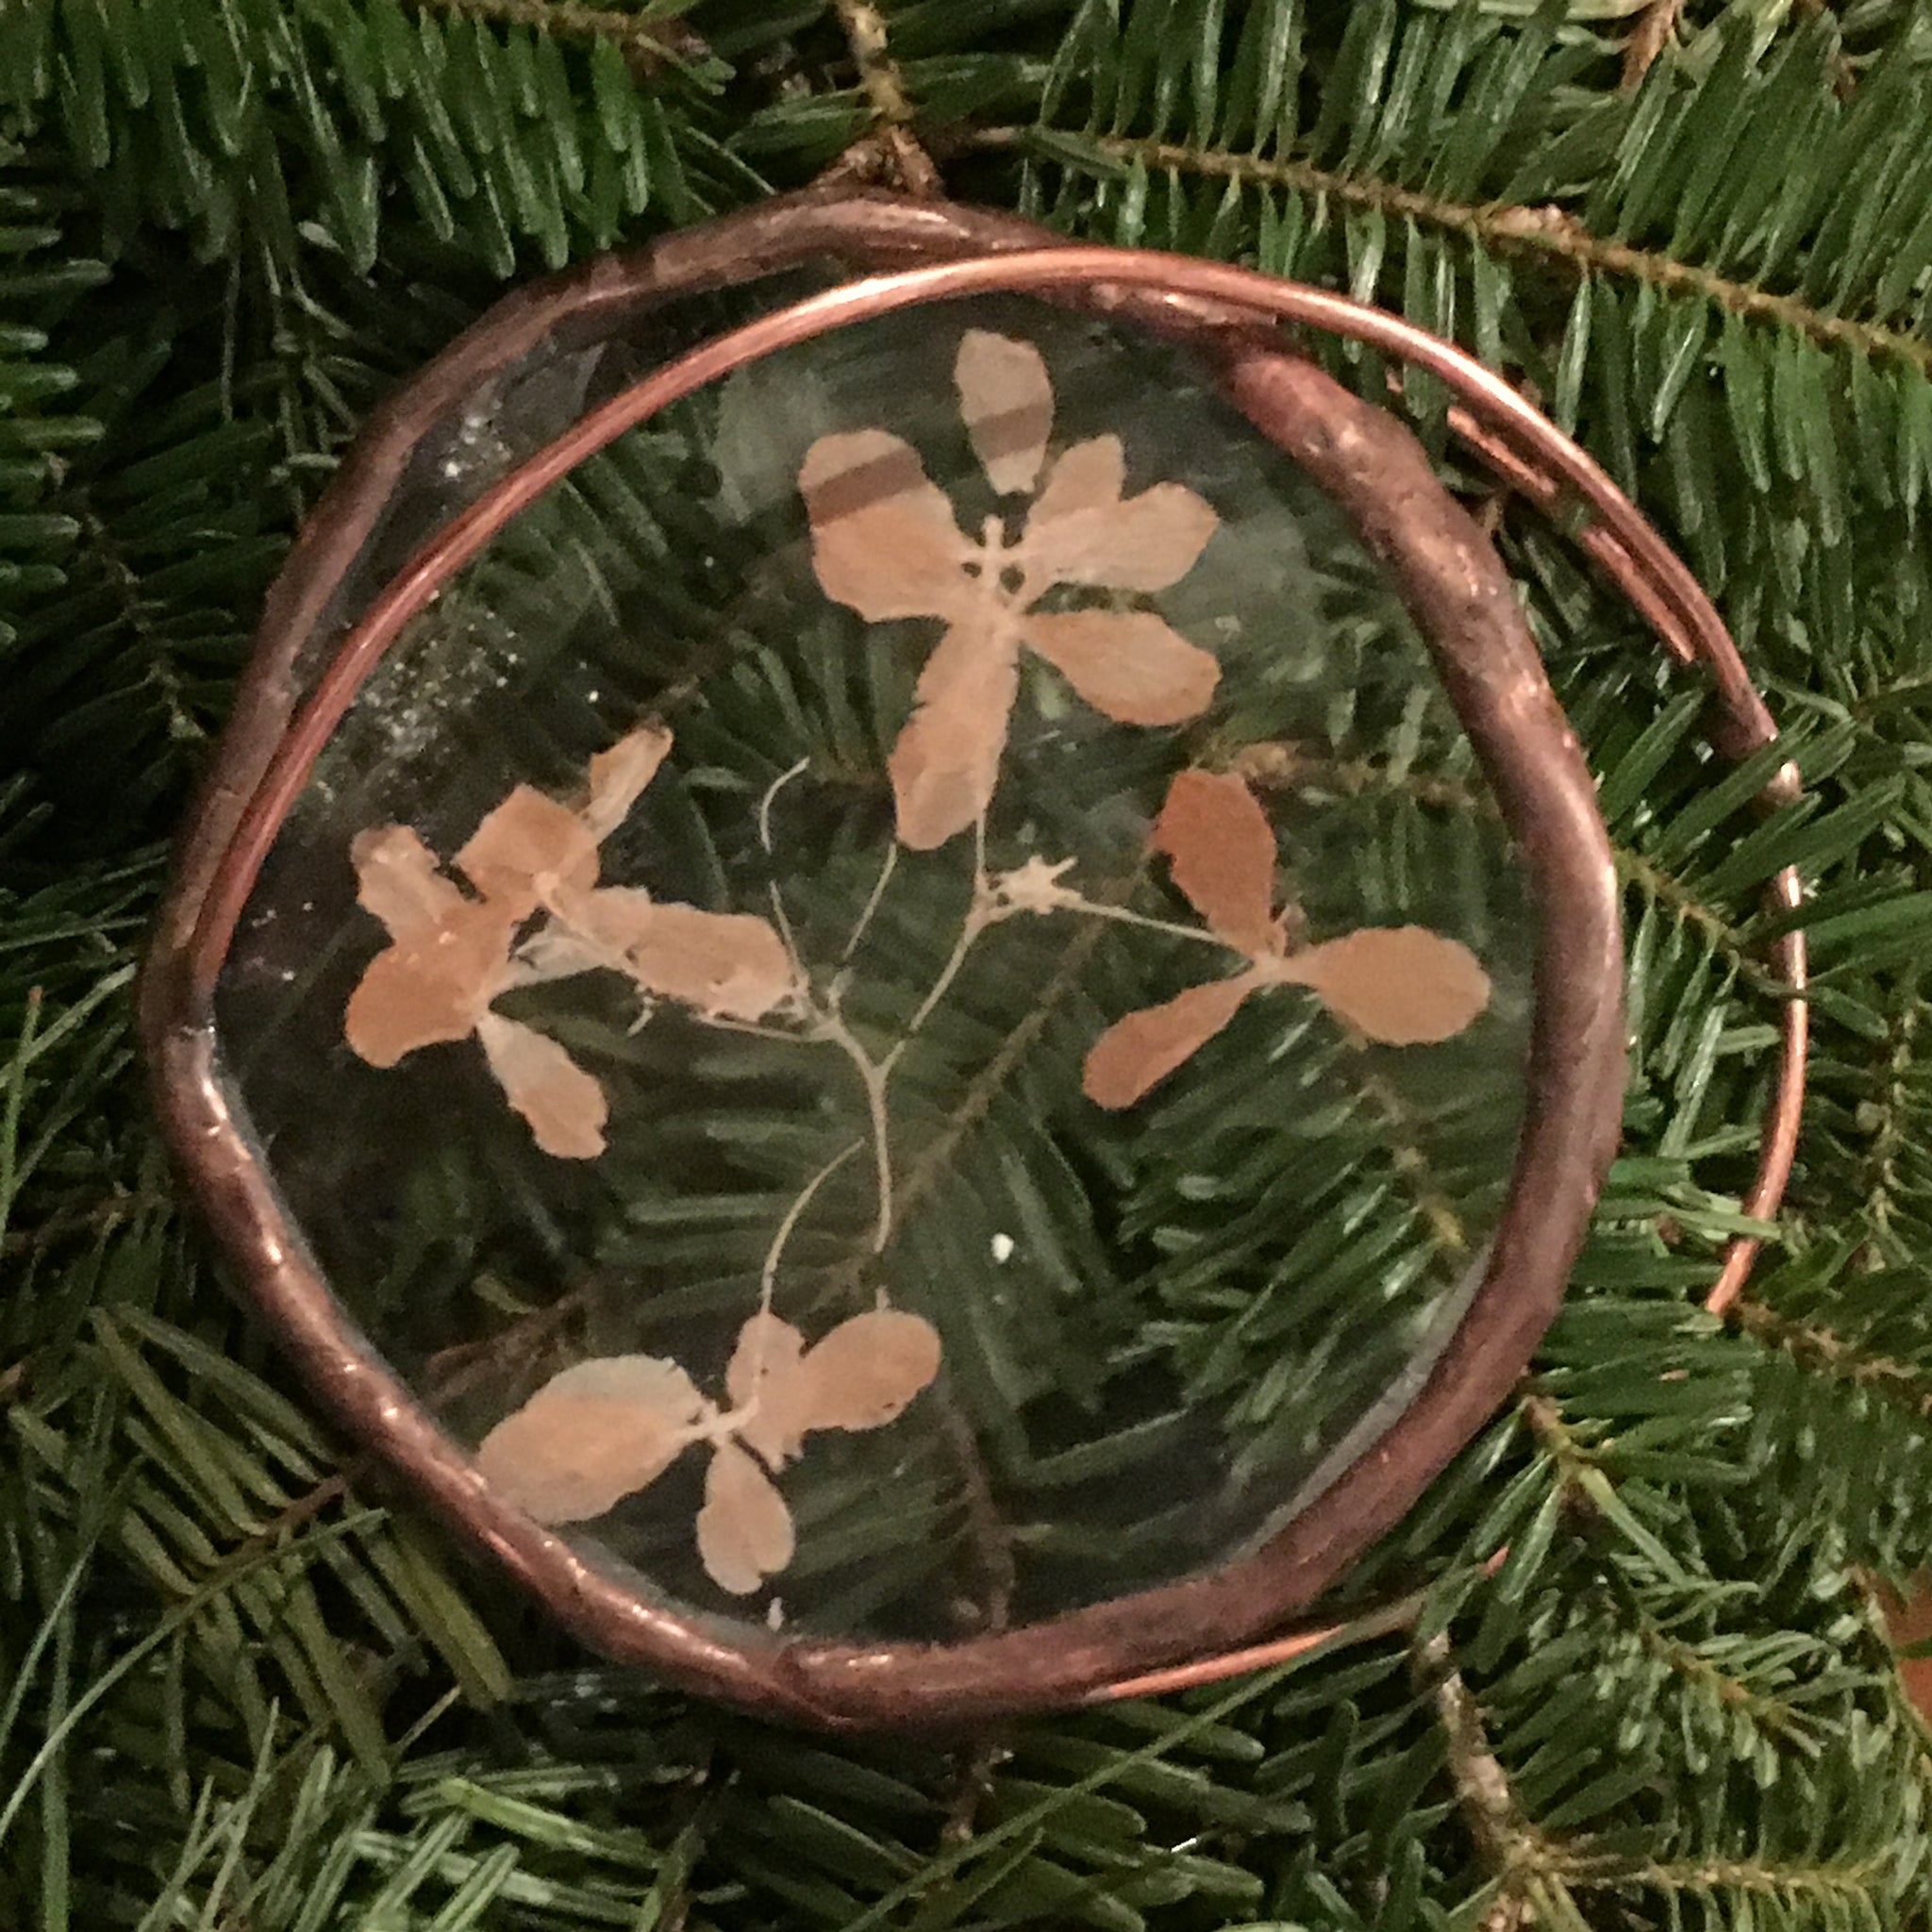 Hydrangea Ornament